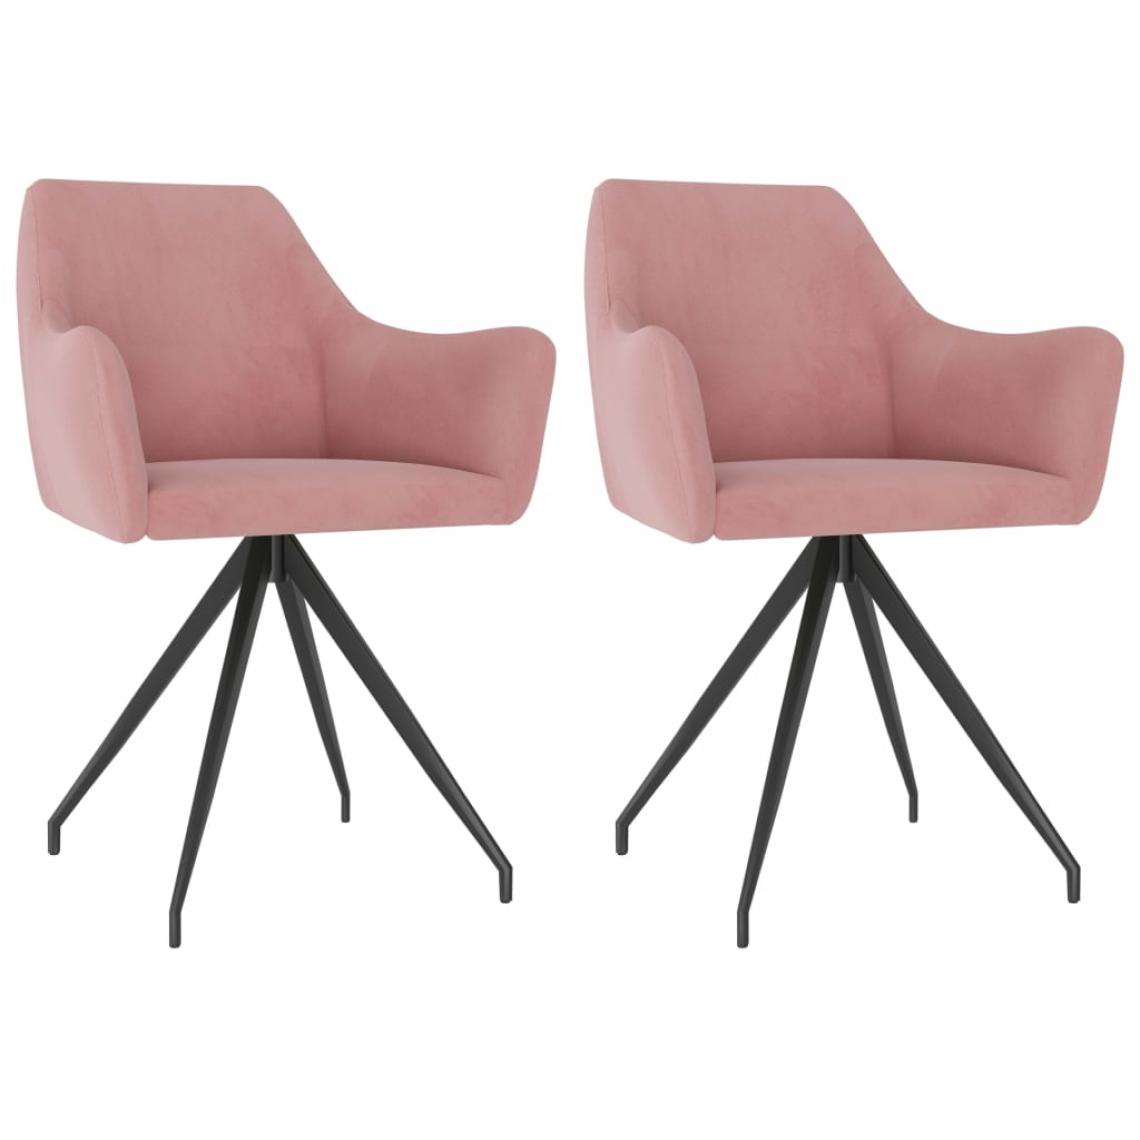 Decoshop26 - Lot de 2 chaises de salle à manger cuisine design moderne velours rose CDS020966 - Chaises